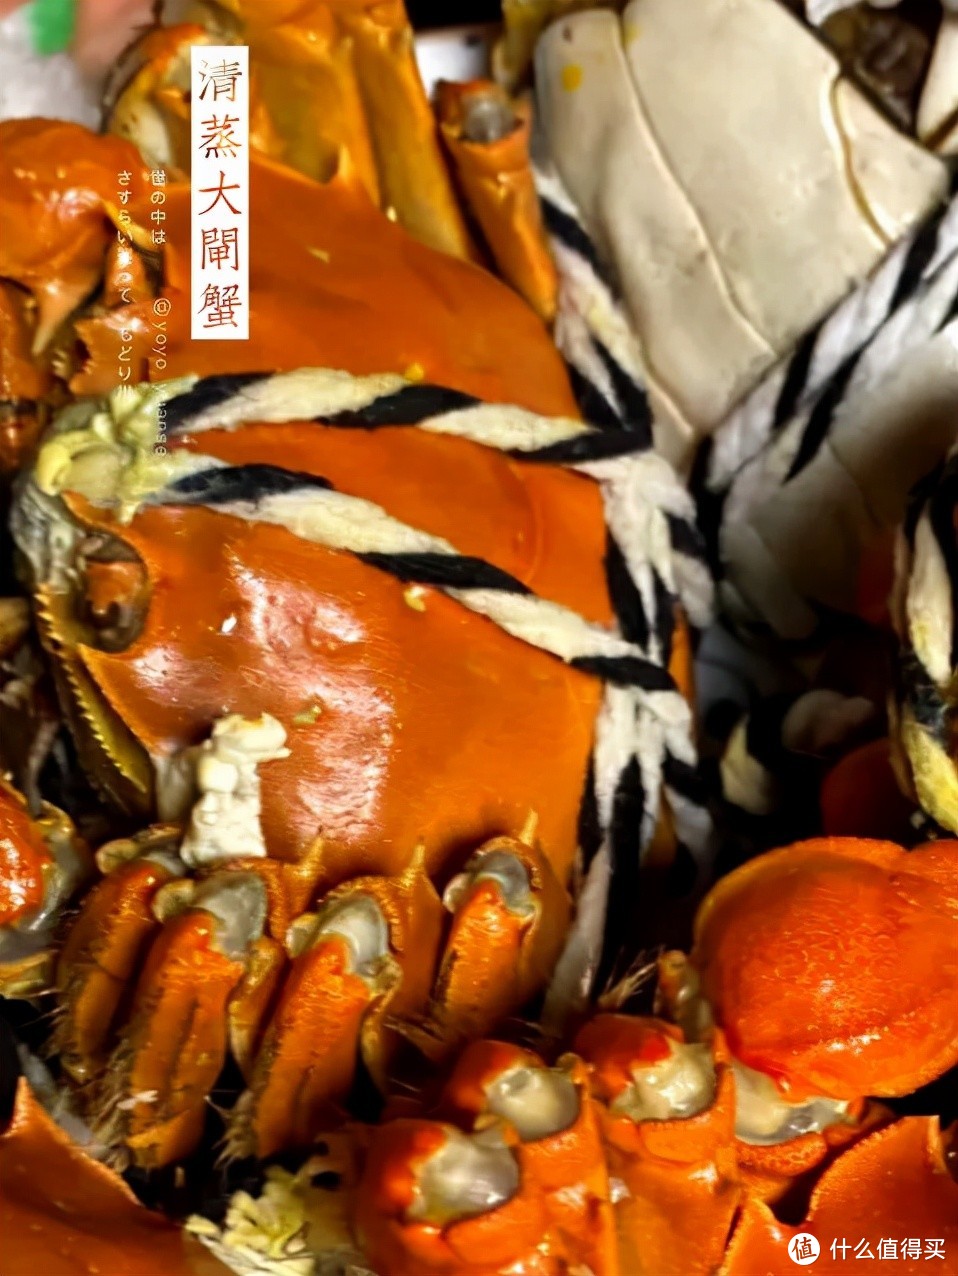 你知道阳澄湖哪家的大螃蟹好吃吗？苏州阳澄湖农家乐哪家吃饭好